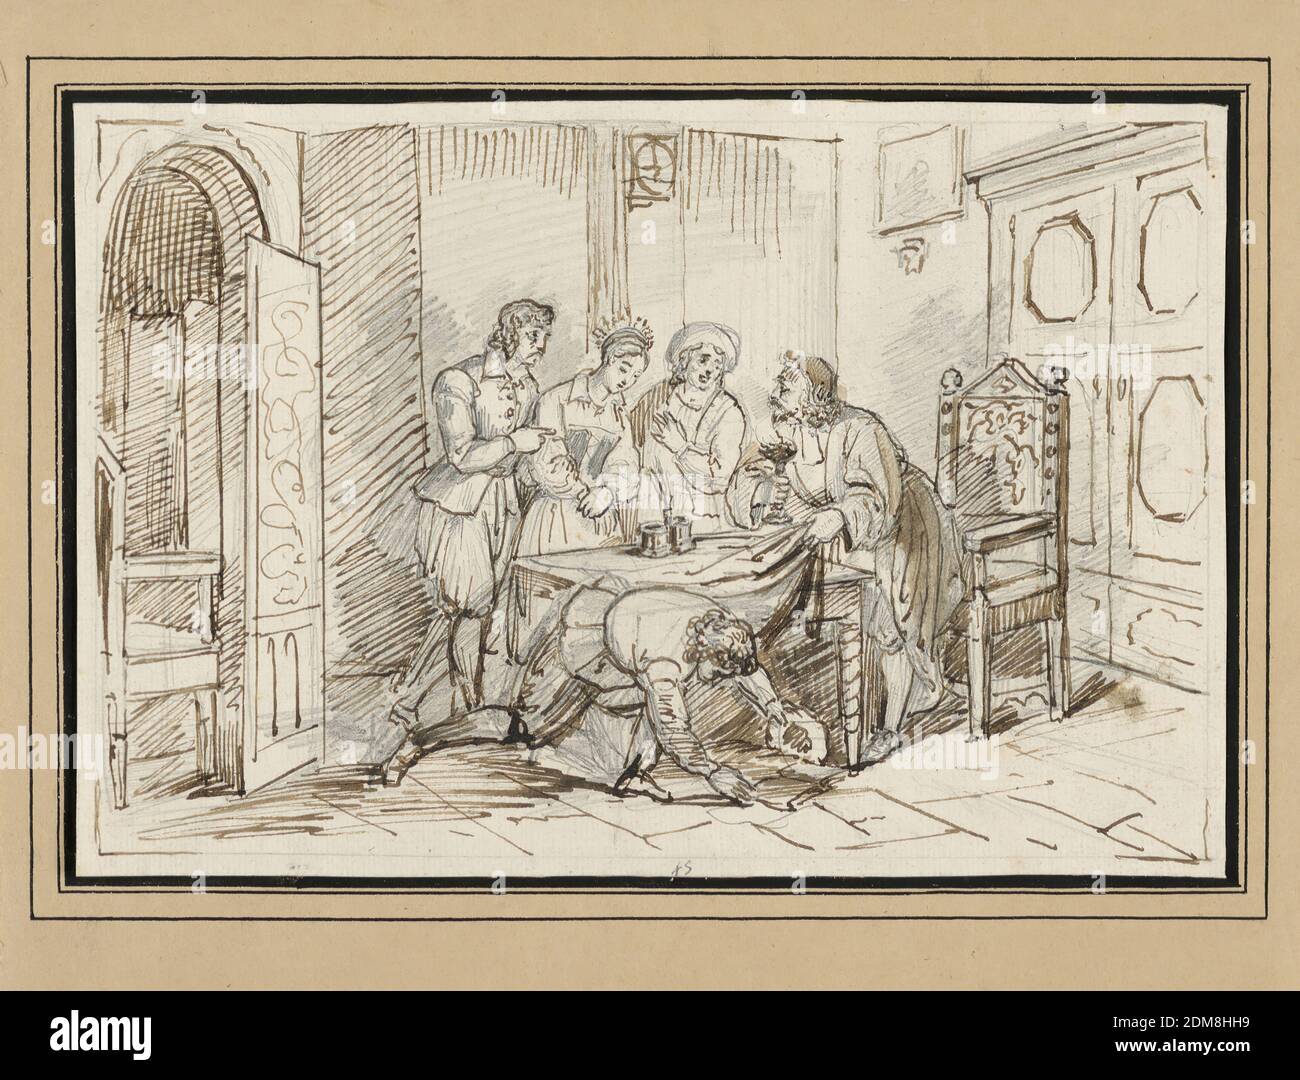 Innenszene mit Brautparty, Graphit und Pinsel und brauner Tusche auf Papier wird EINE Braut, begleitet von zwei Figuren, vor einen älteren bärtigen Mann gebracht, der einen Leuchter in der Hand hält und das Tuch von einem Tisch vor sich hebt, unter dem ein anderer Mann auf der Suche zu sehen ist. Wahrscheinlich als Buchillustration gedacht., Deutschland, 1770–1800, Zeichnung Stockfoto